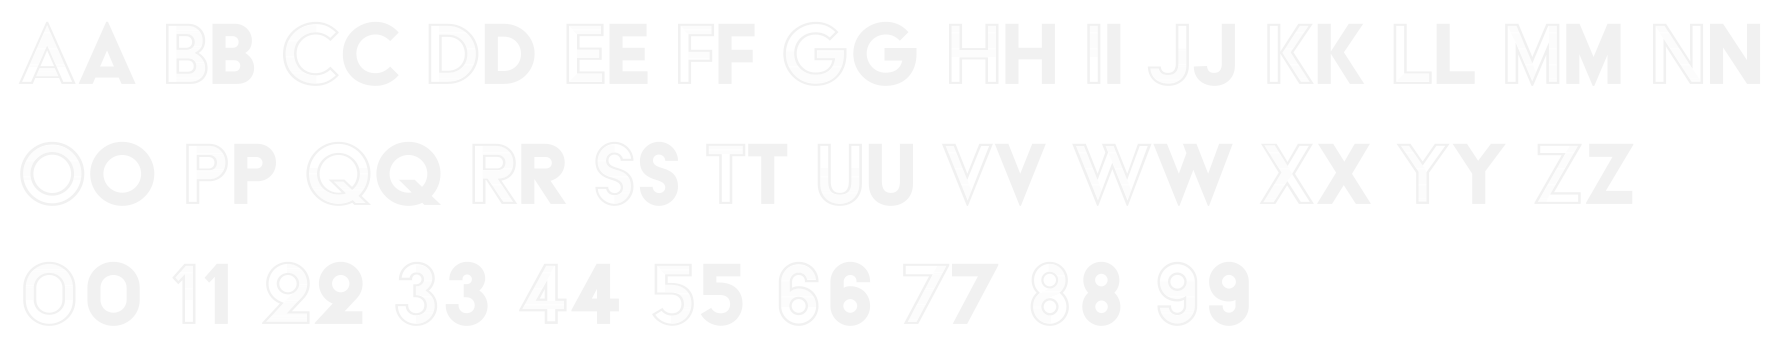 Acier BAT - Typeface